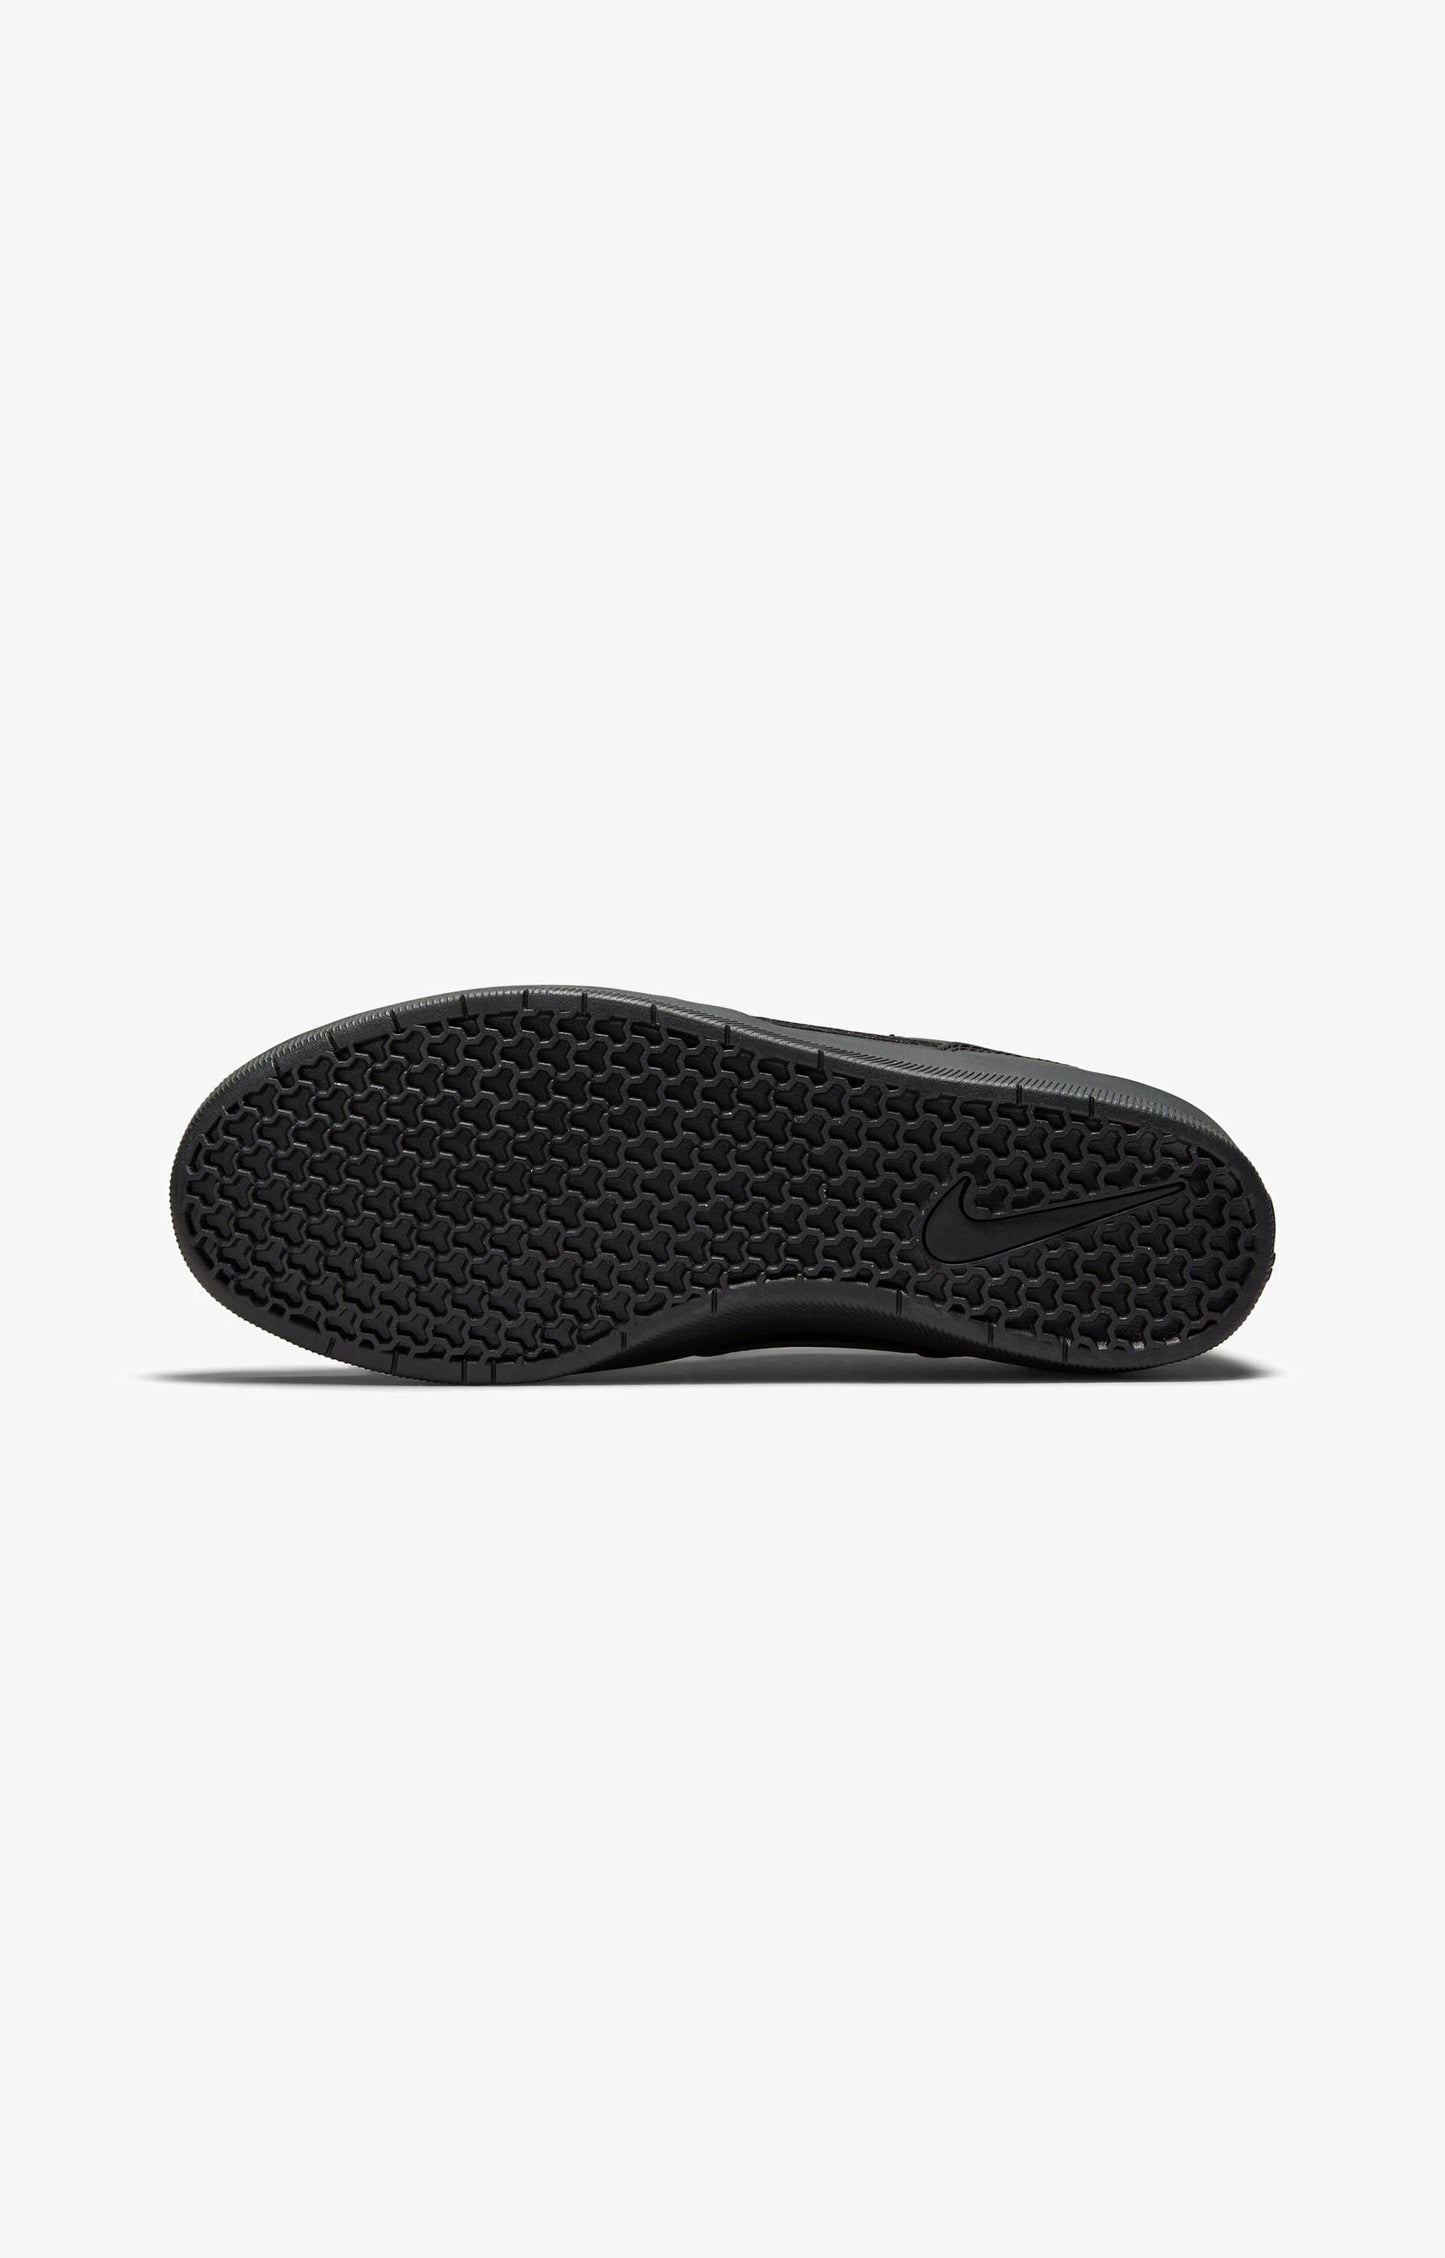 Nike SB Force 58 Premium Shoe, Black/Black